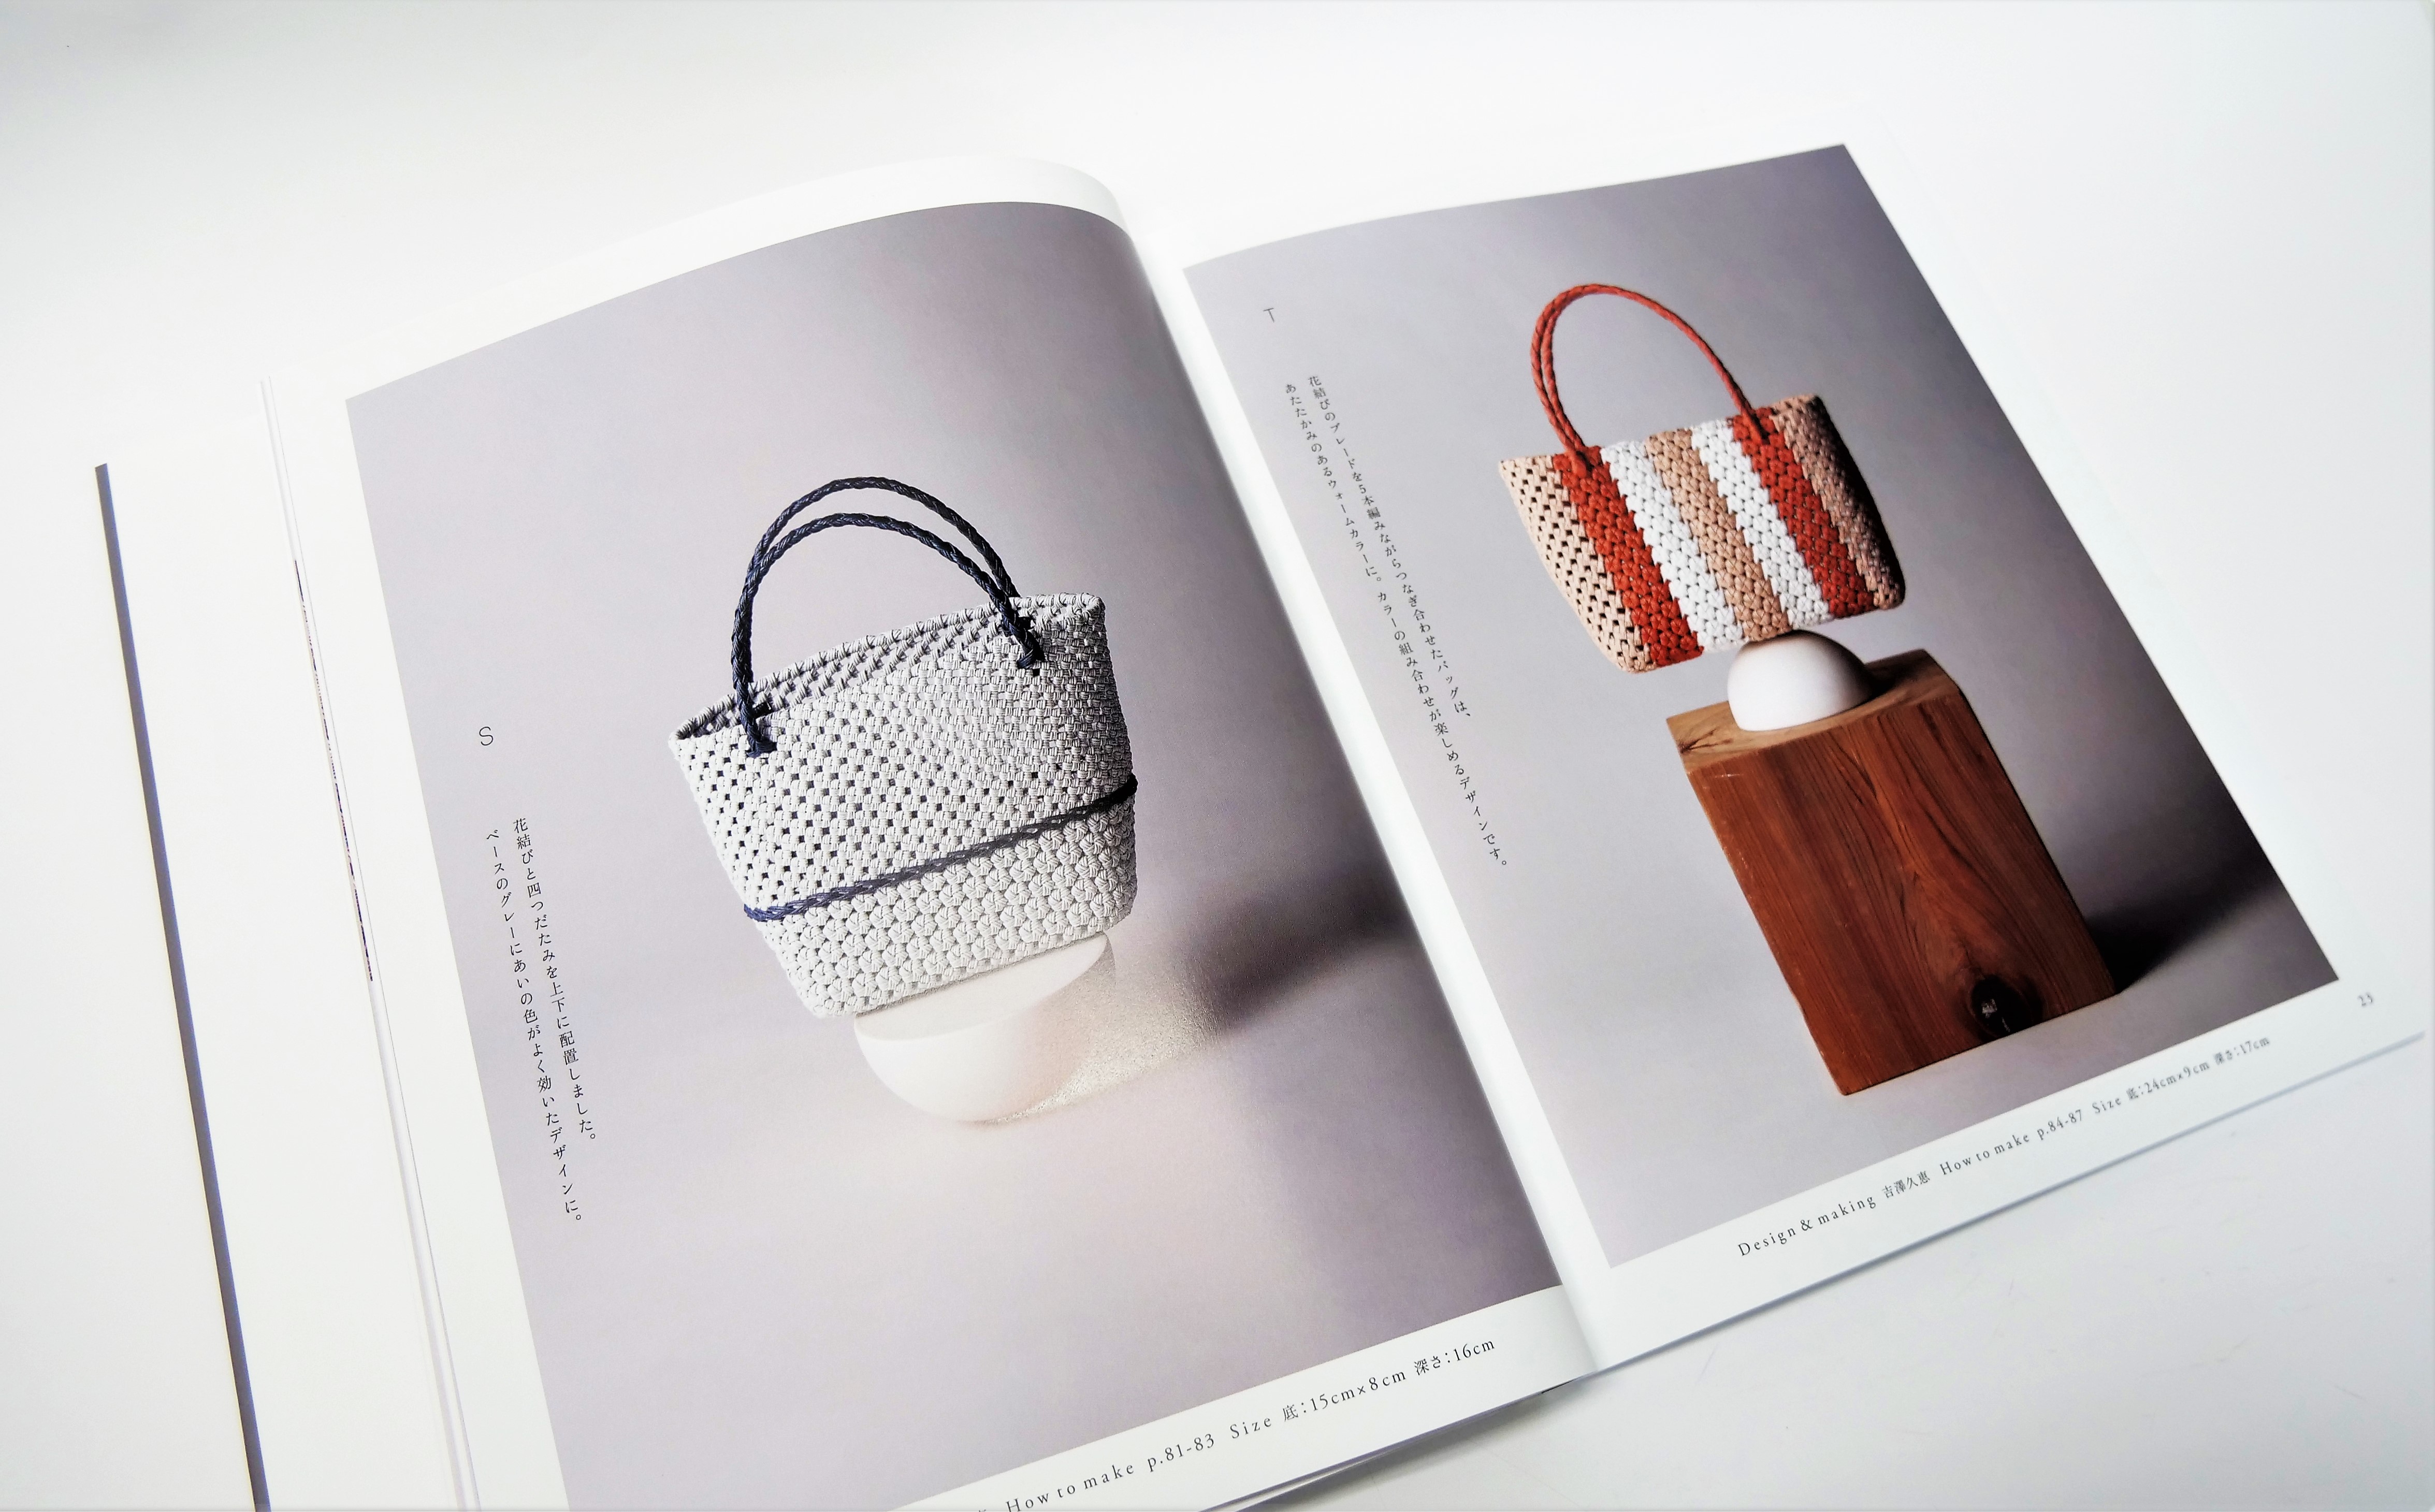 紙バンド好きさんが一度は作ってみたいと憧れる「花結び」。魅力的なデザインのバッグがぎゅっと詰まった一冊 - 東京印書館 |  写真集・展覧会図録・絵本・その他印刷物の企画制作| TOKYO INSHOKAN PRINTING CO.